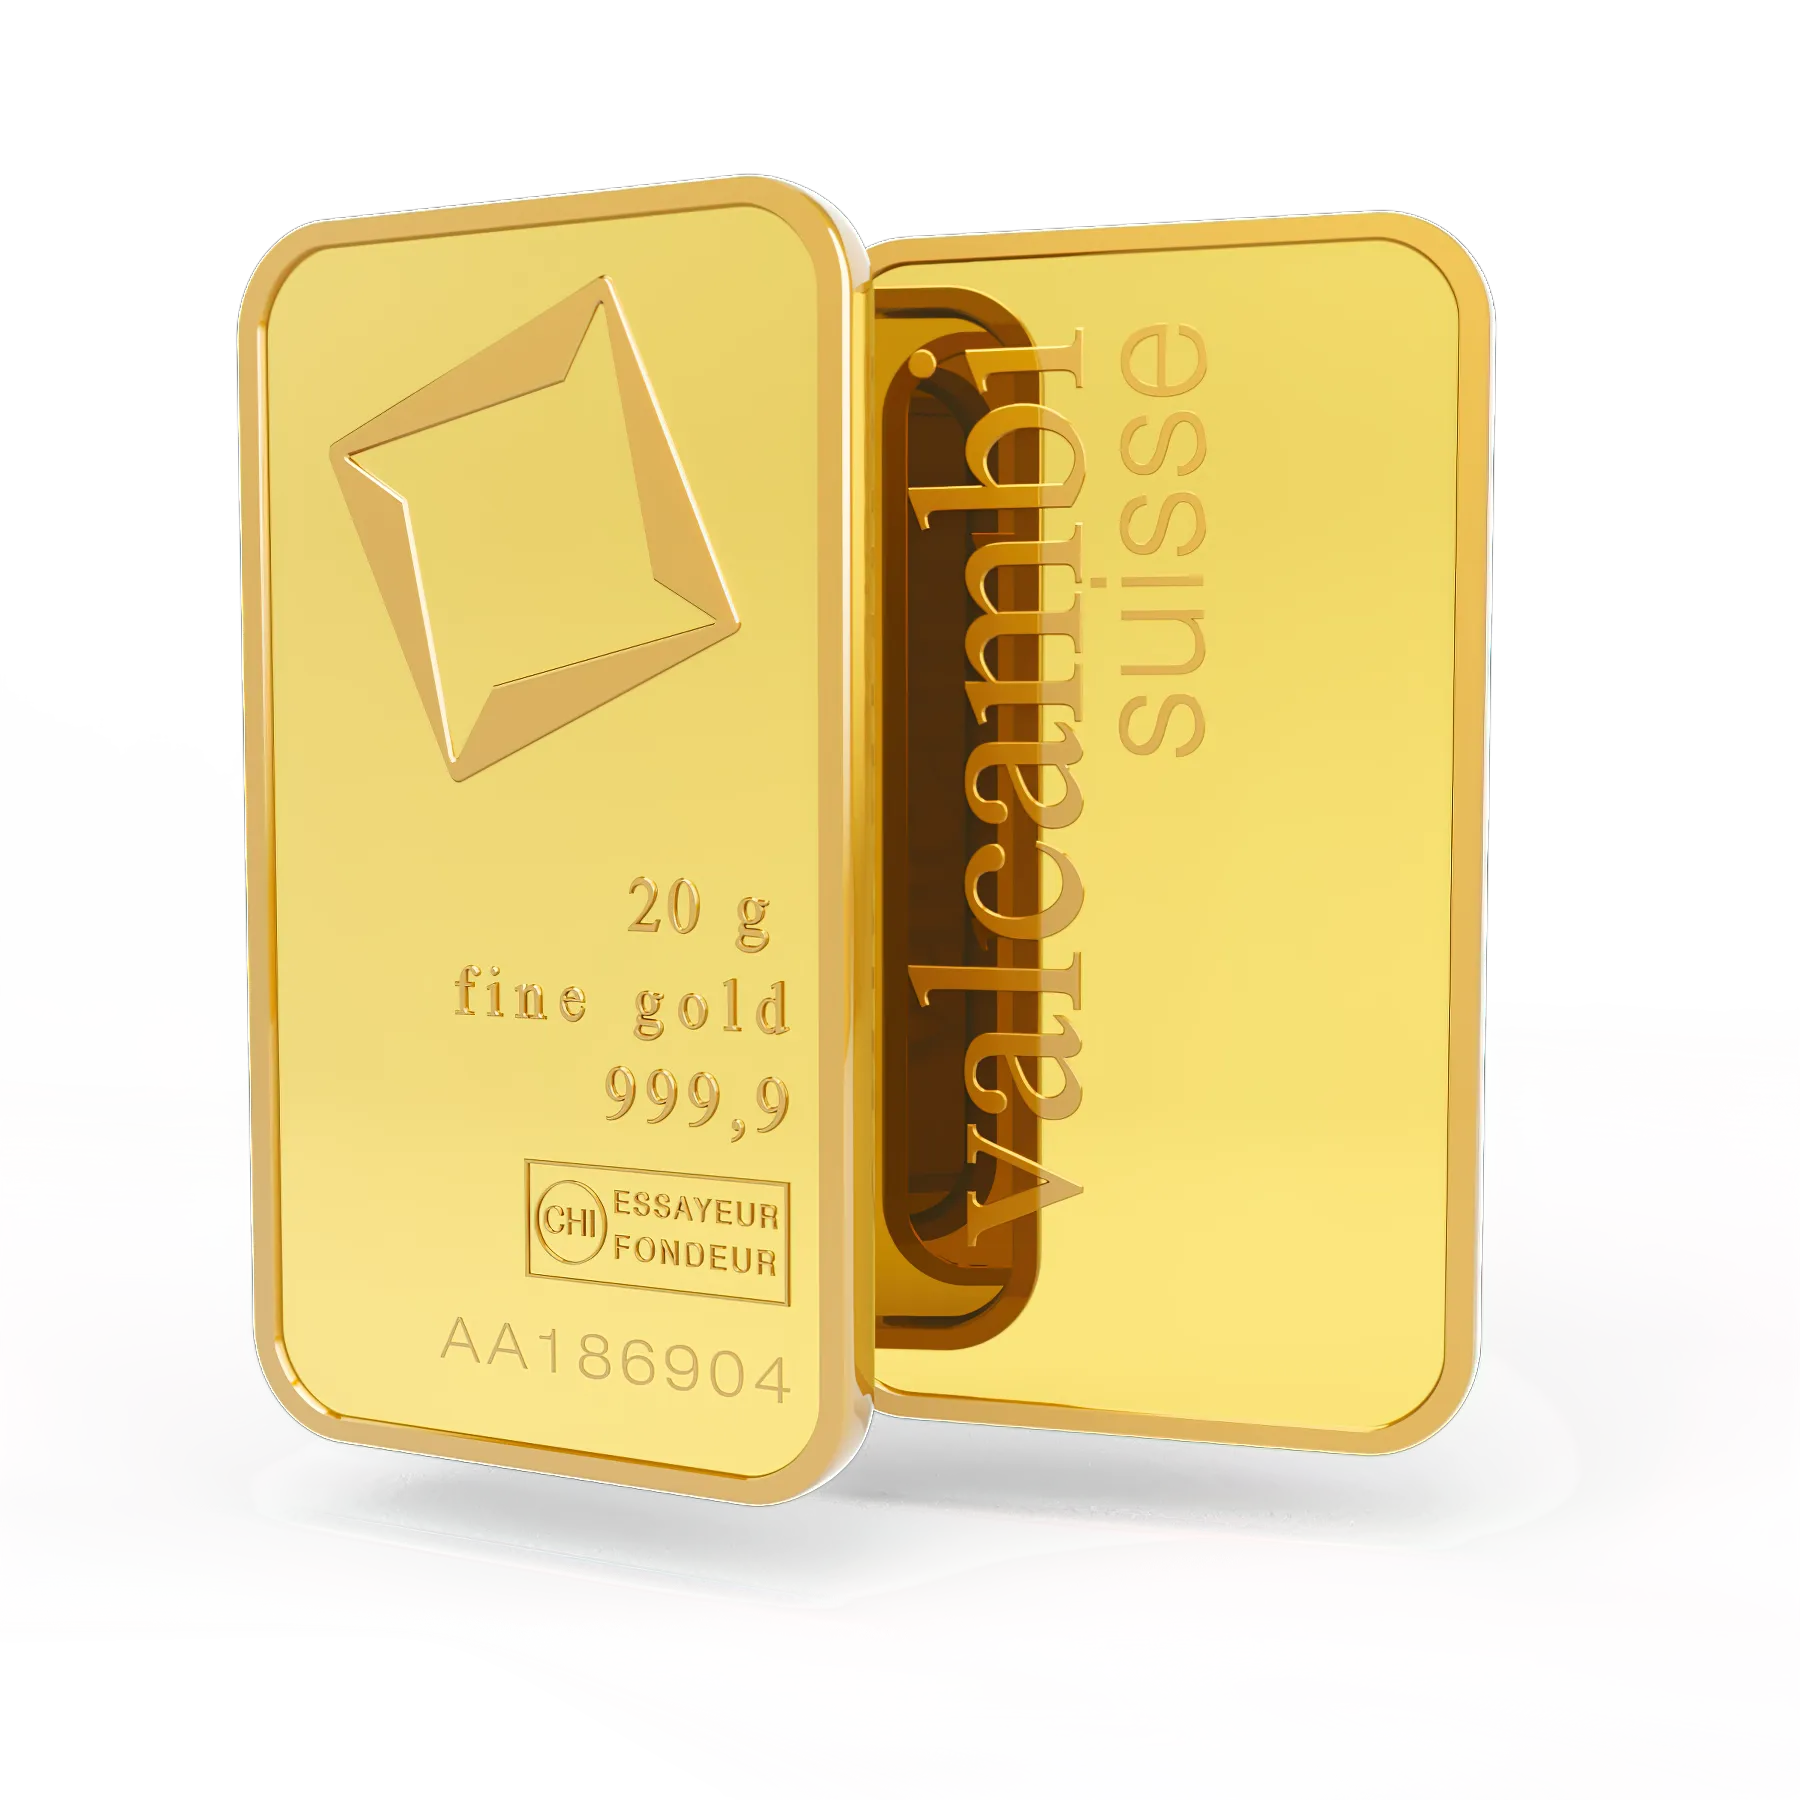 20g gold bar. Switzerland. Fine Gold. 999.9